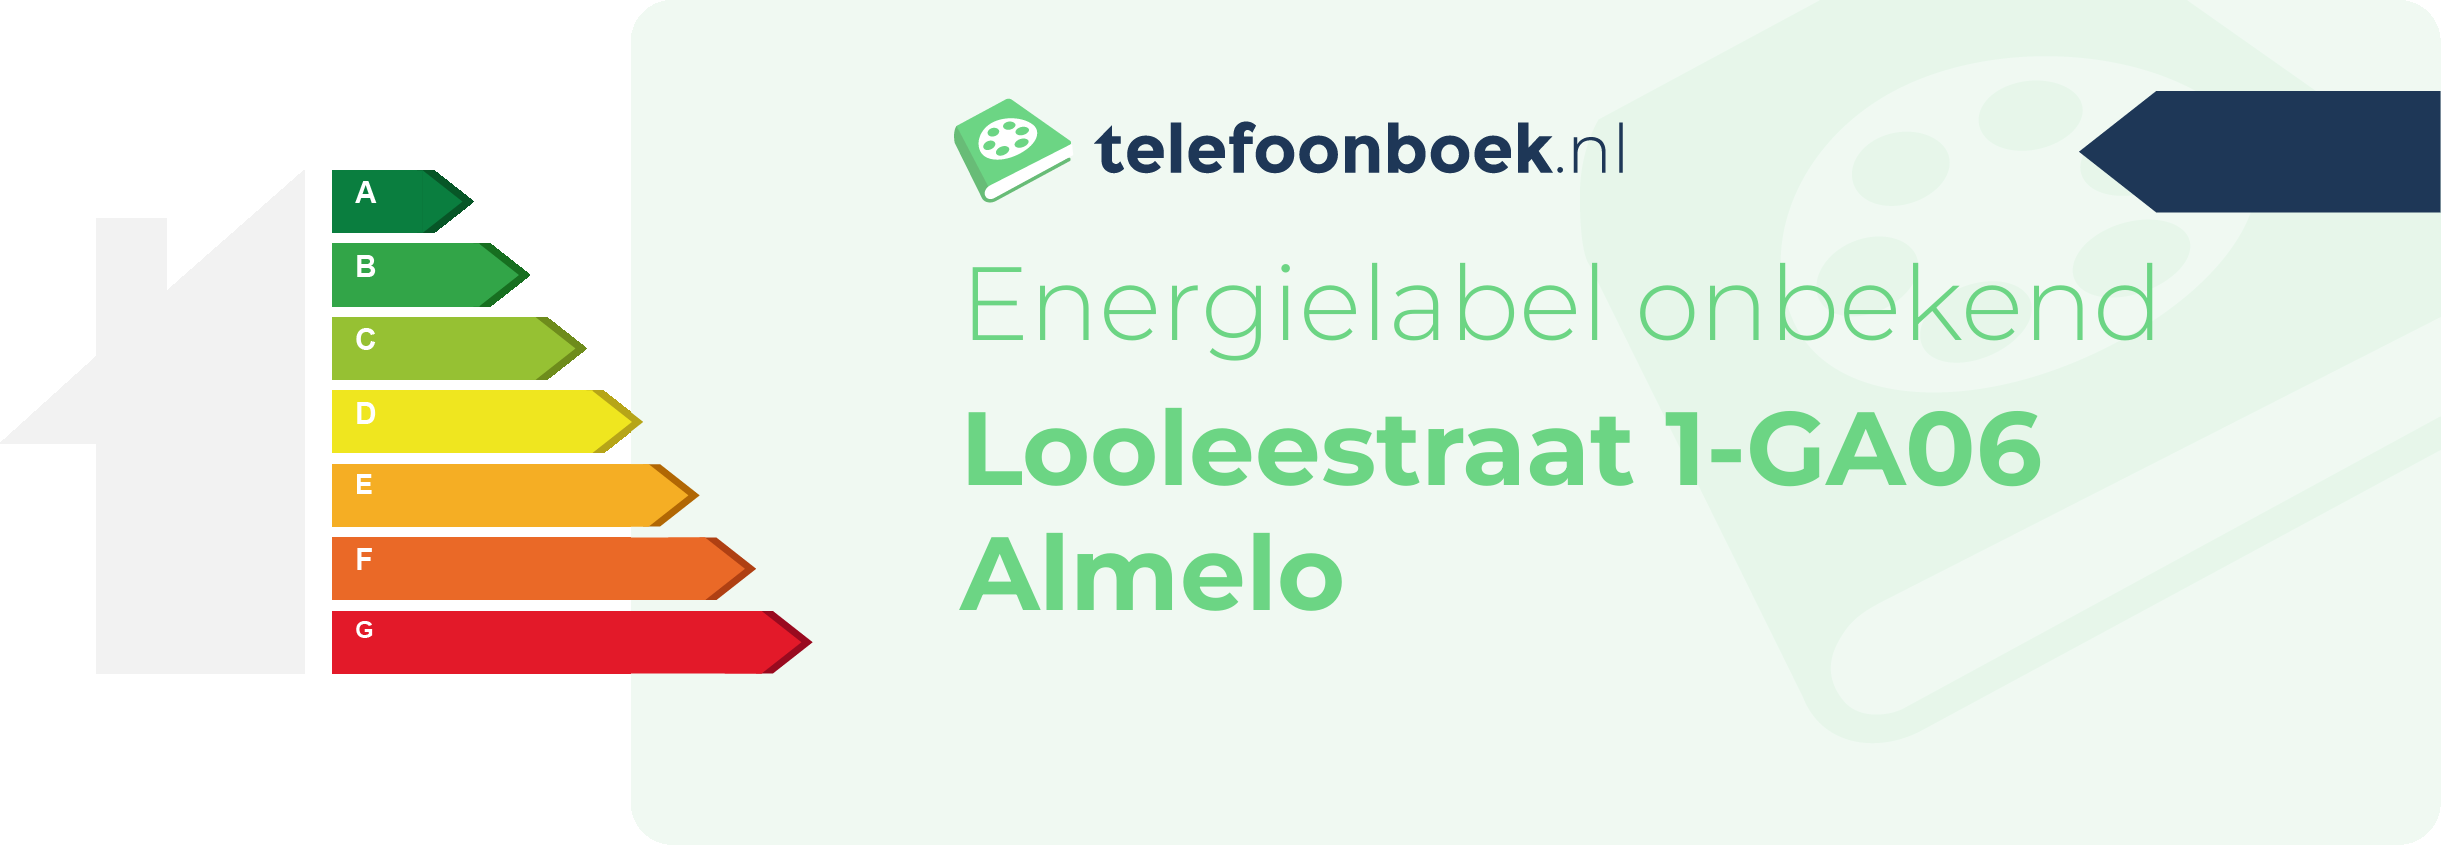 Energielabel Looleestraat 1-GA06 Almelo